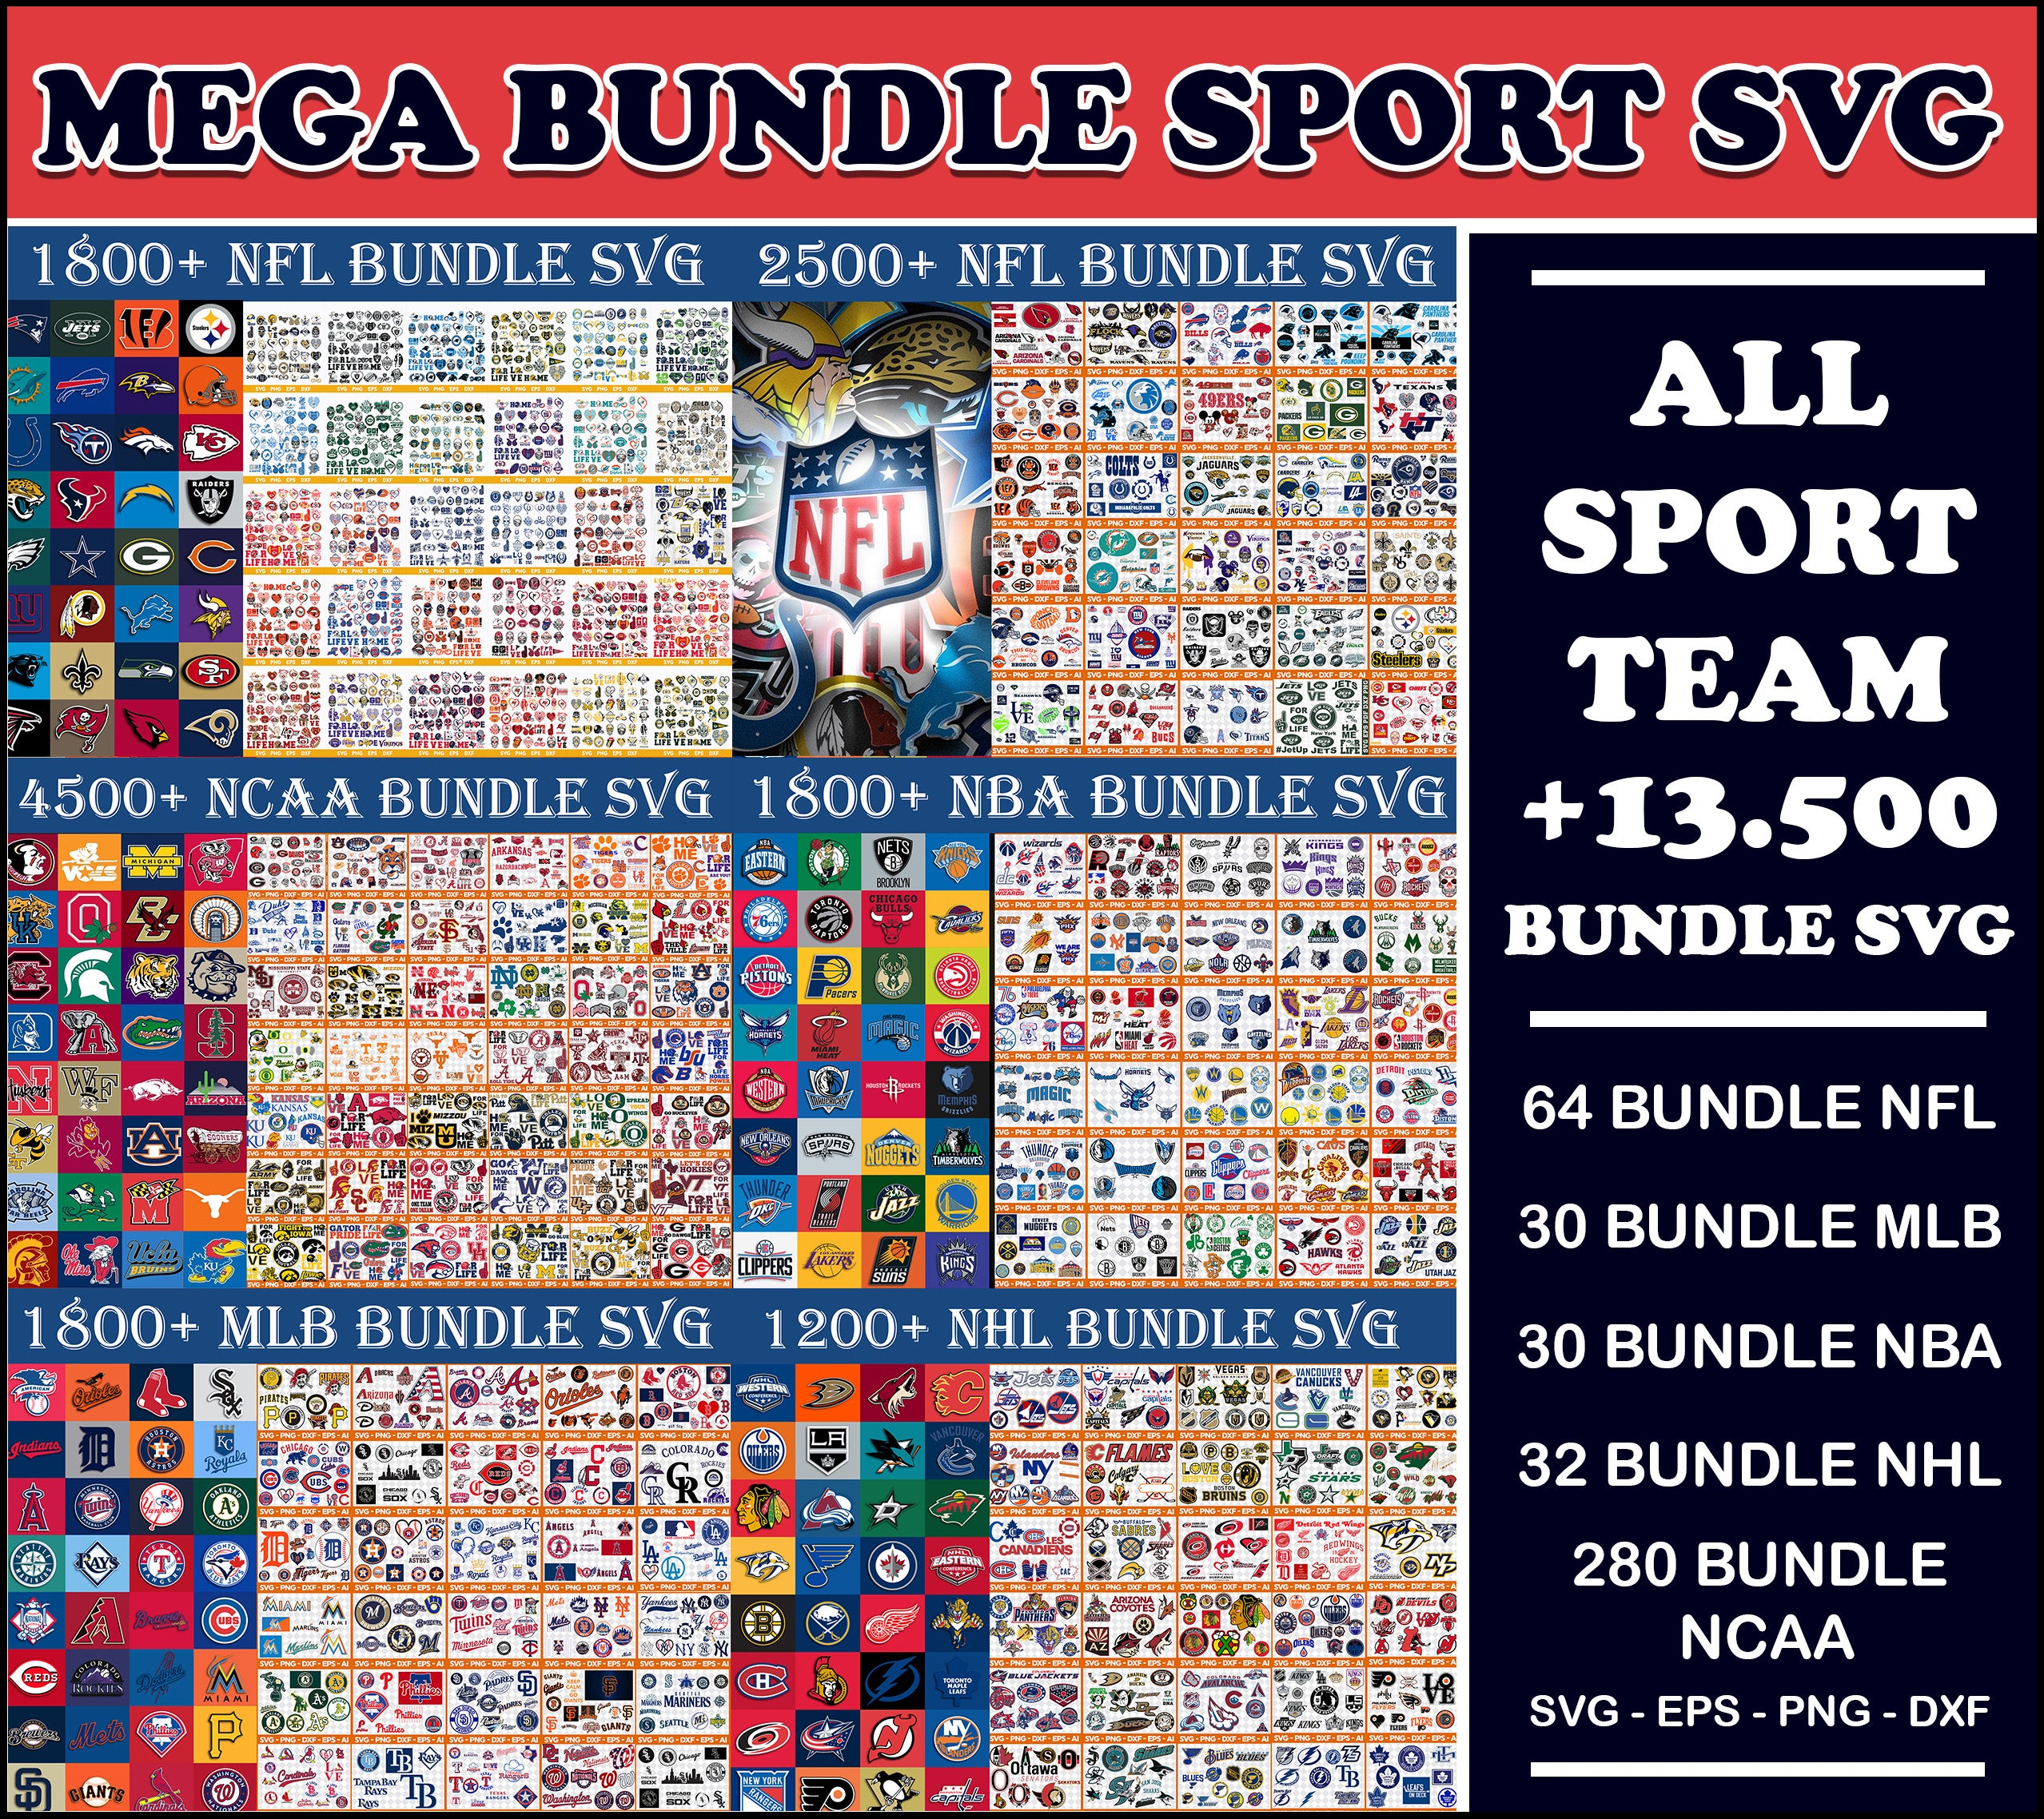 13.500+ Mega bundle sport svg, NFL svg, NHL svg, MBL svg, bundle nca svg, Bundle ncaa svg, digital file cut